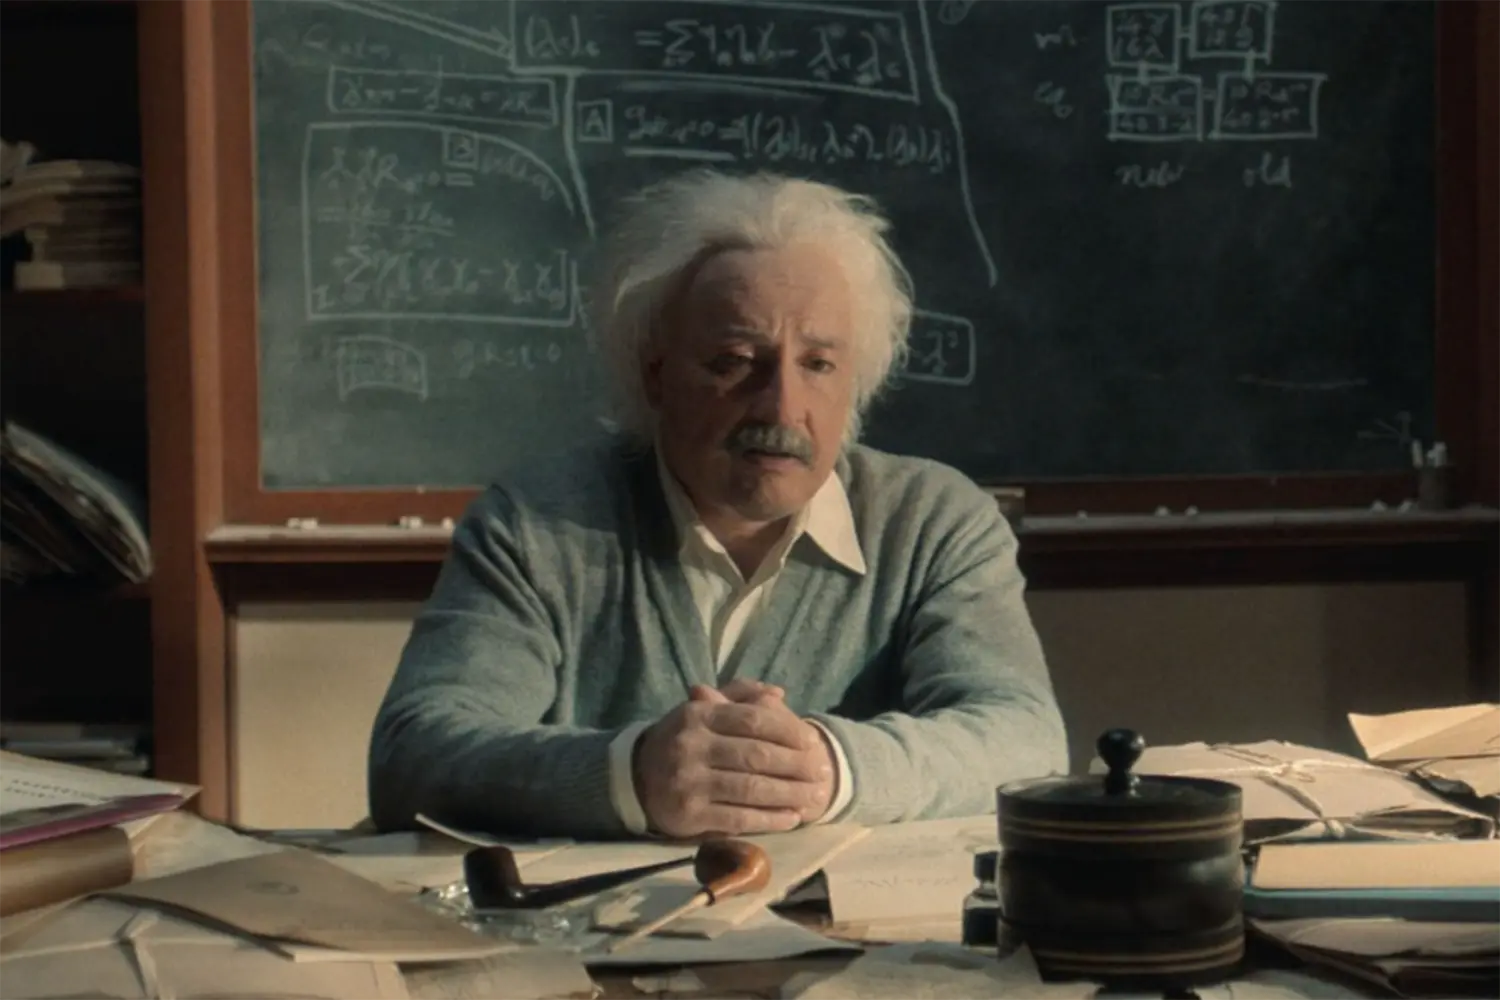 Recenze: Einstein a bomba se snaží vypořádat s odkazem slavného fyzika. Bojí se ale ostrých hran